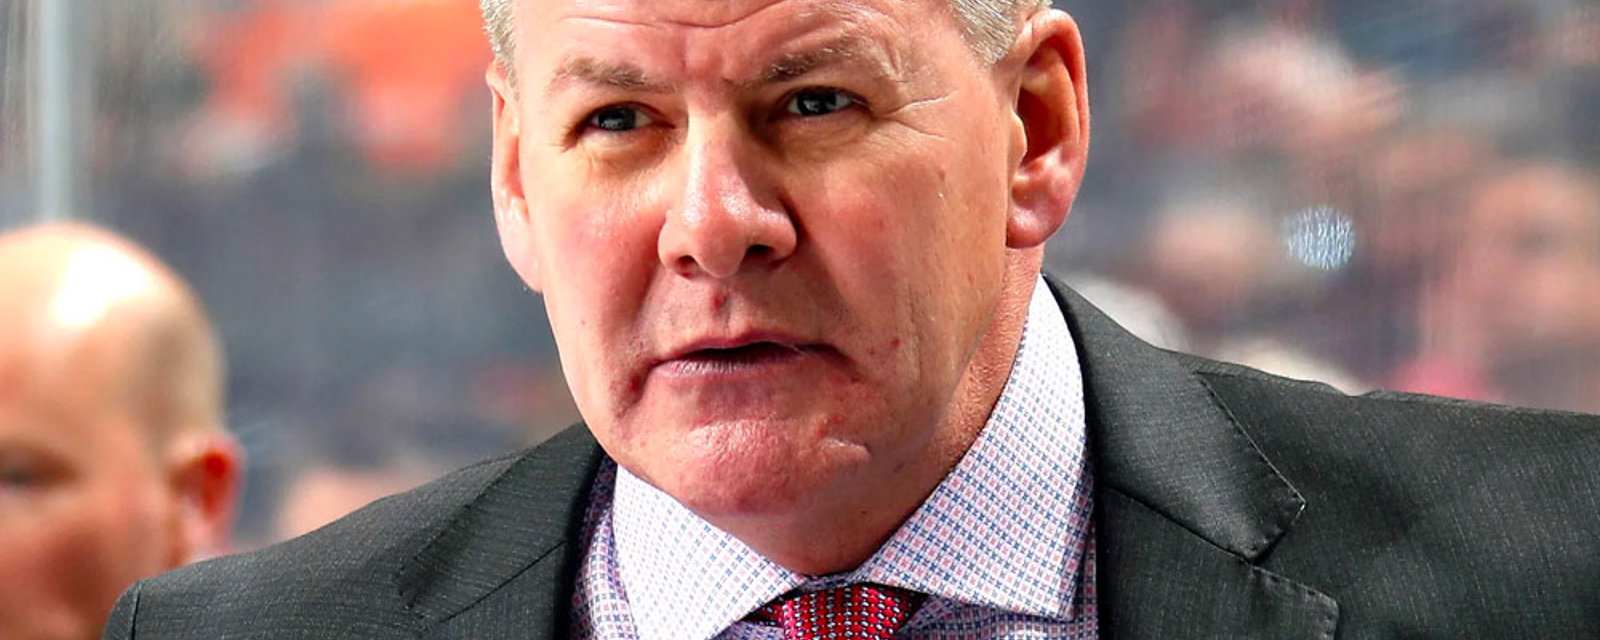 Controversial head coach Bill Peters lands new coaching job during shutdown 